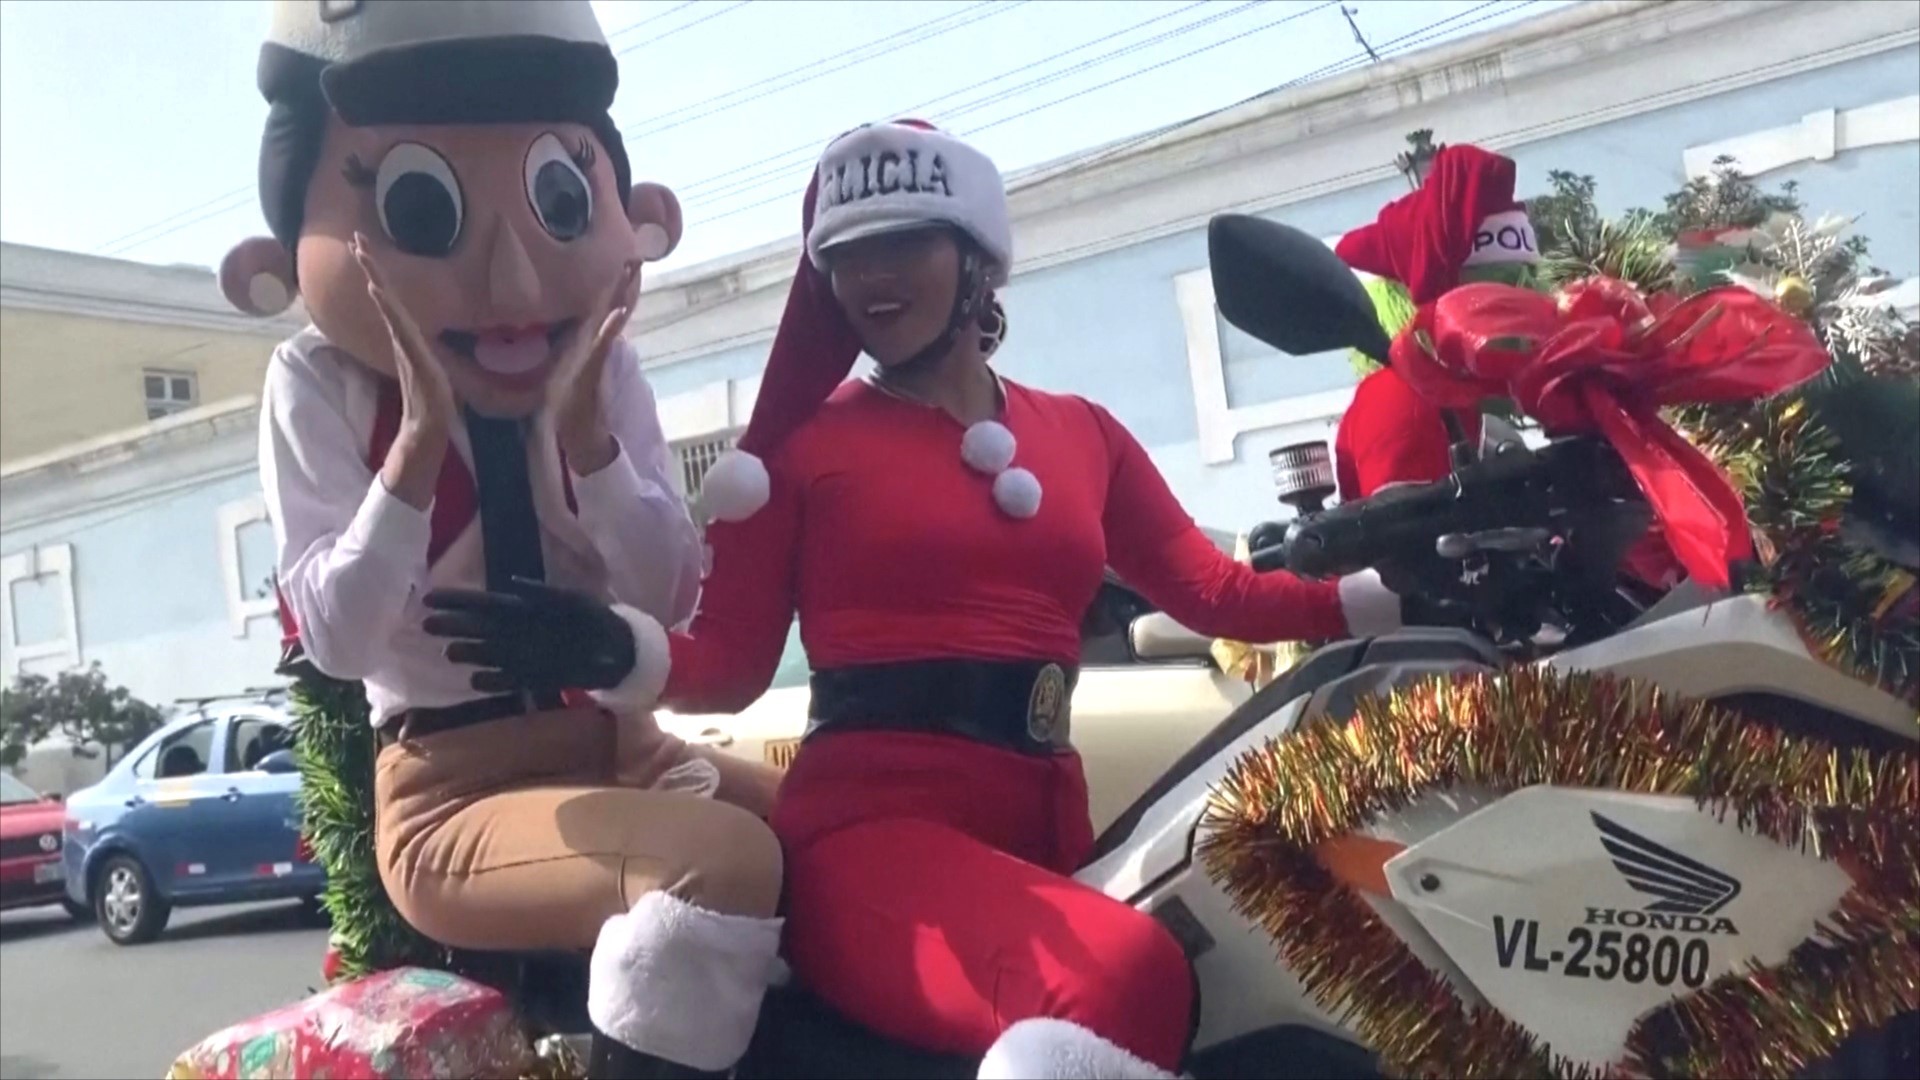 В Перу полицейские в костюмах Санта-Клауса устроили праздник для детей